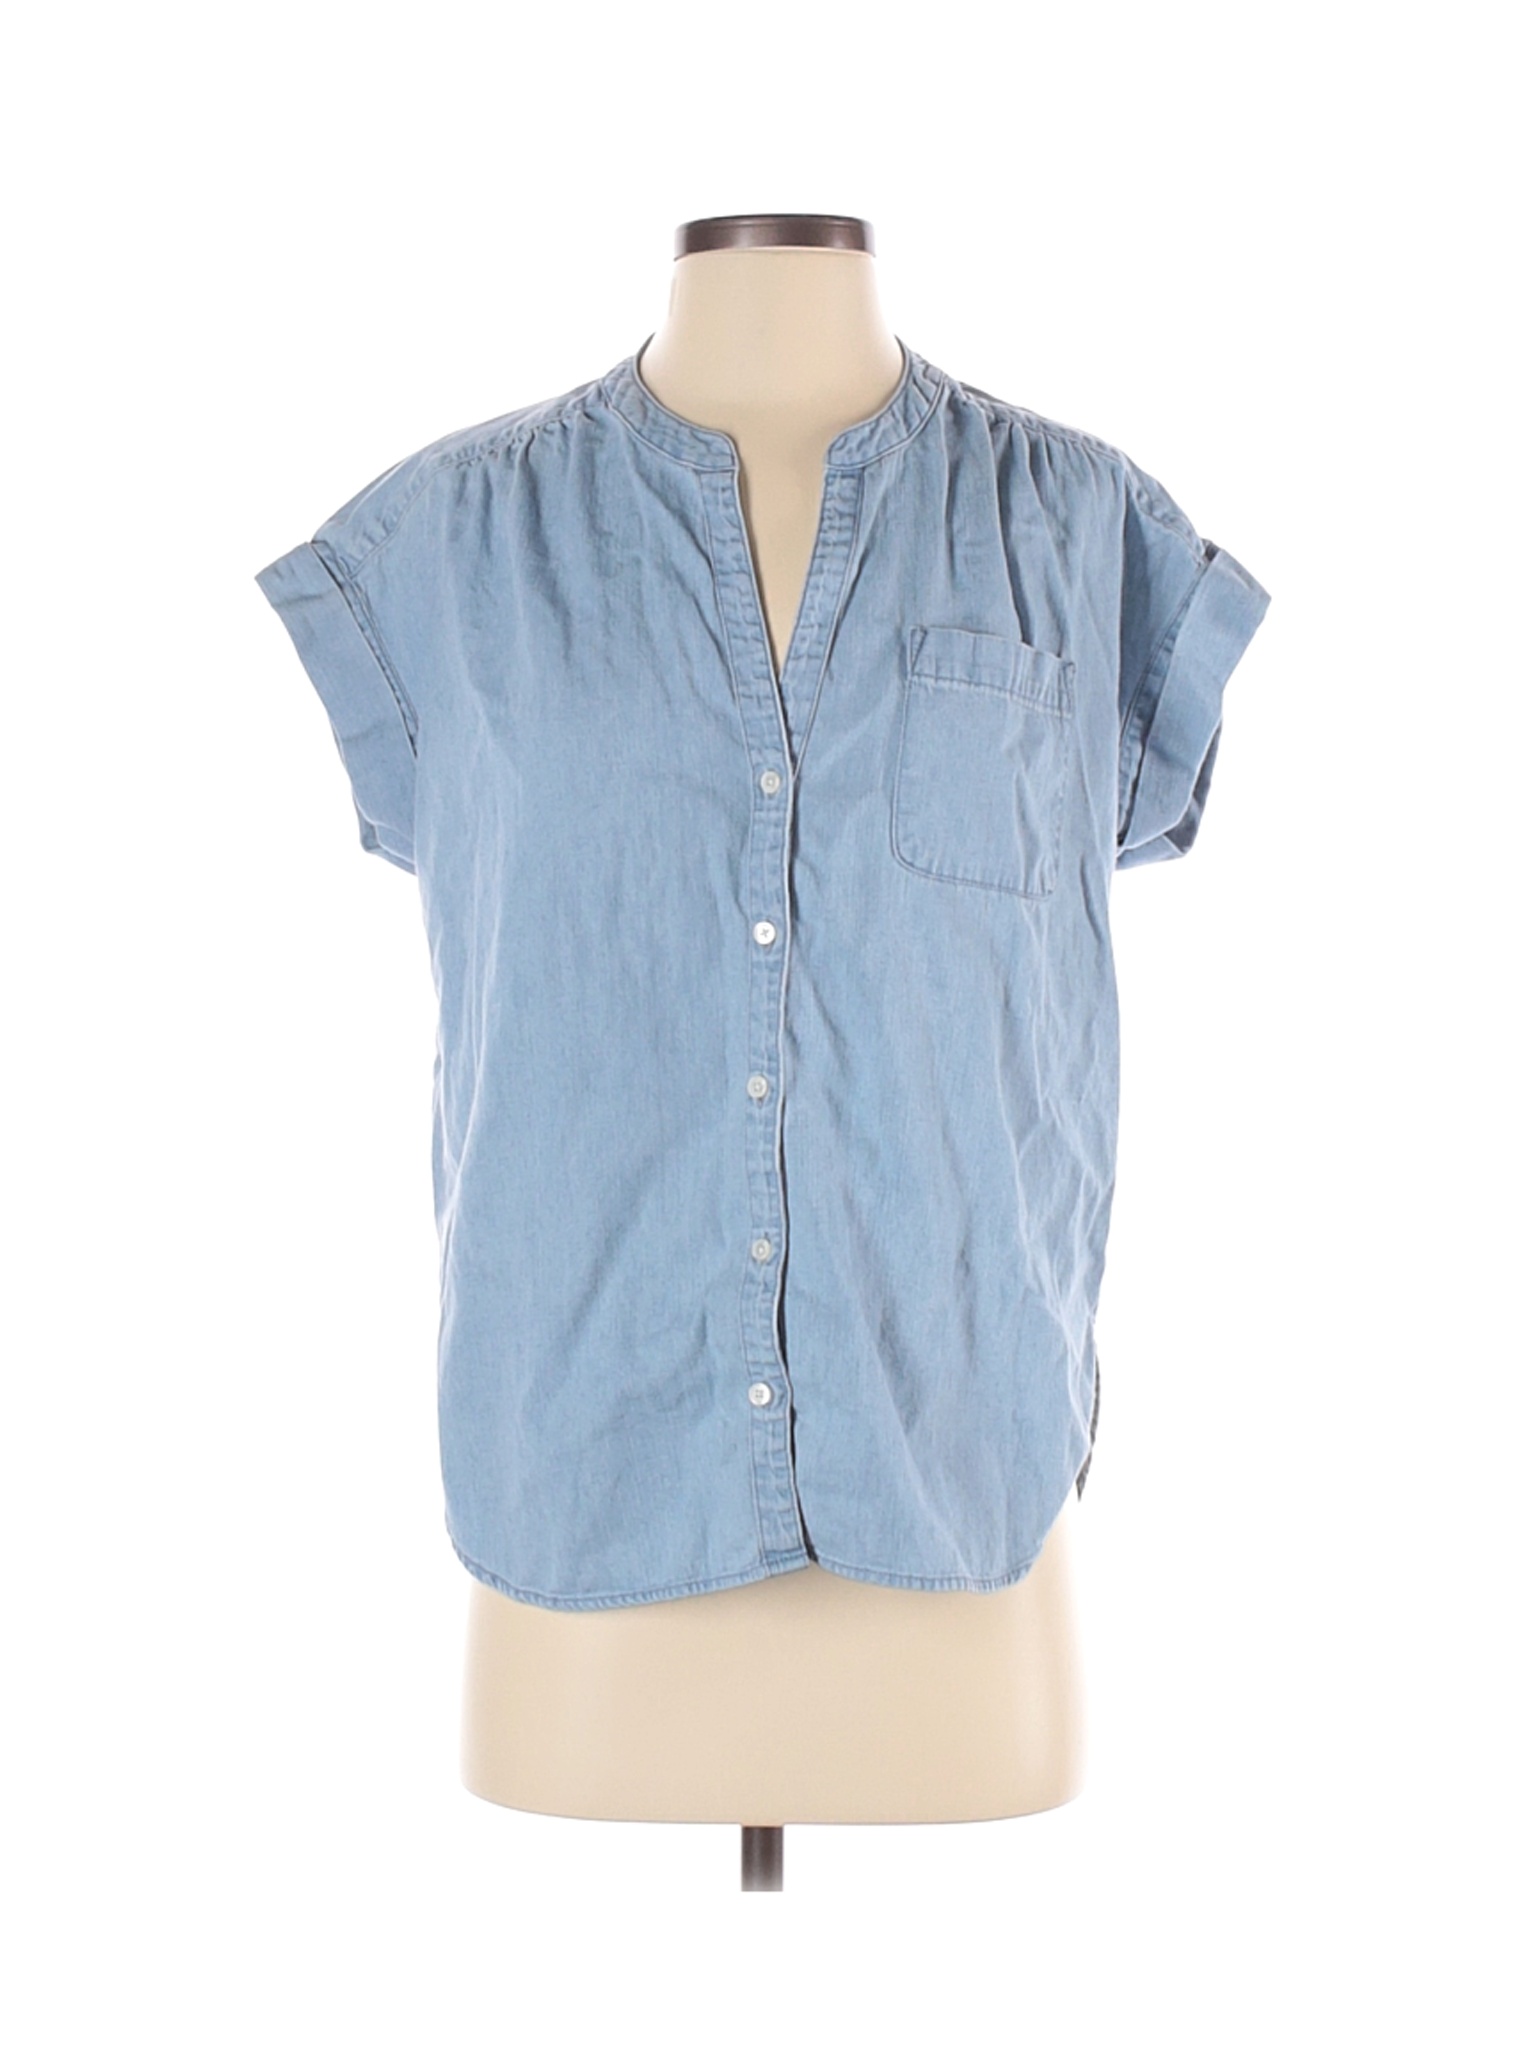 J.Crew Mercantile Women Blue Short Sleeve Button-Down Shirt S | eBay